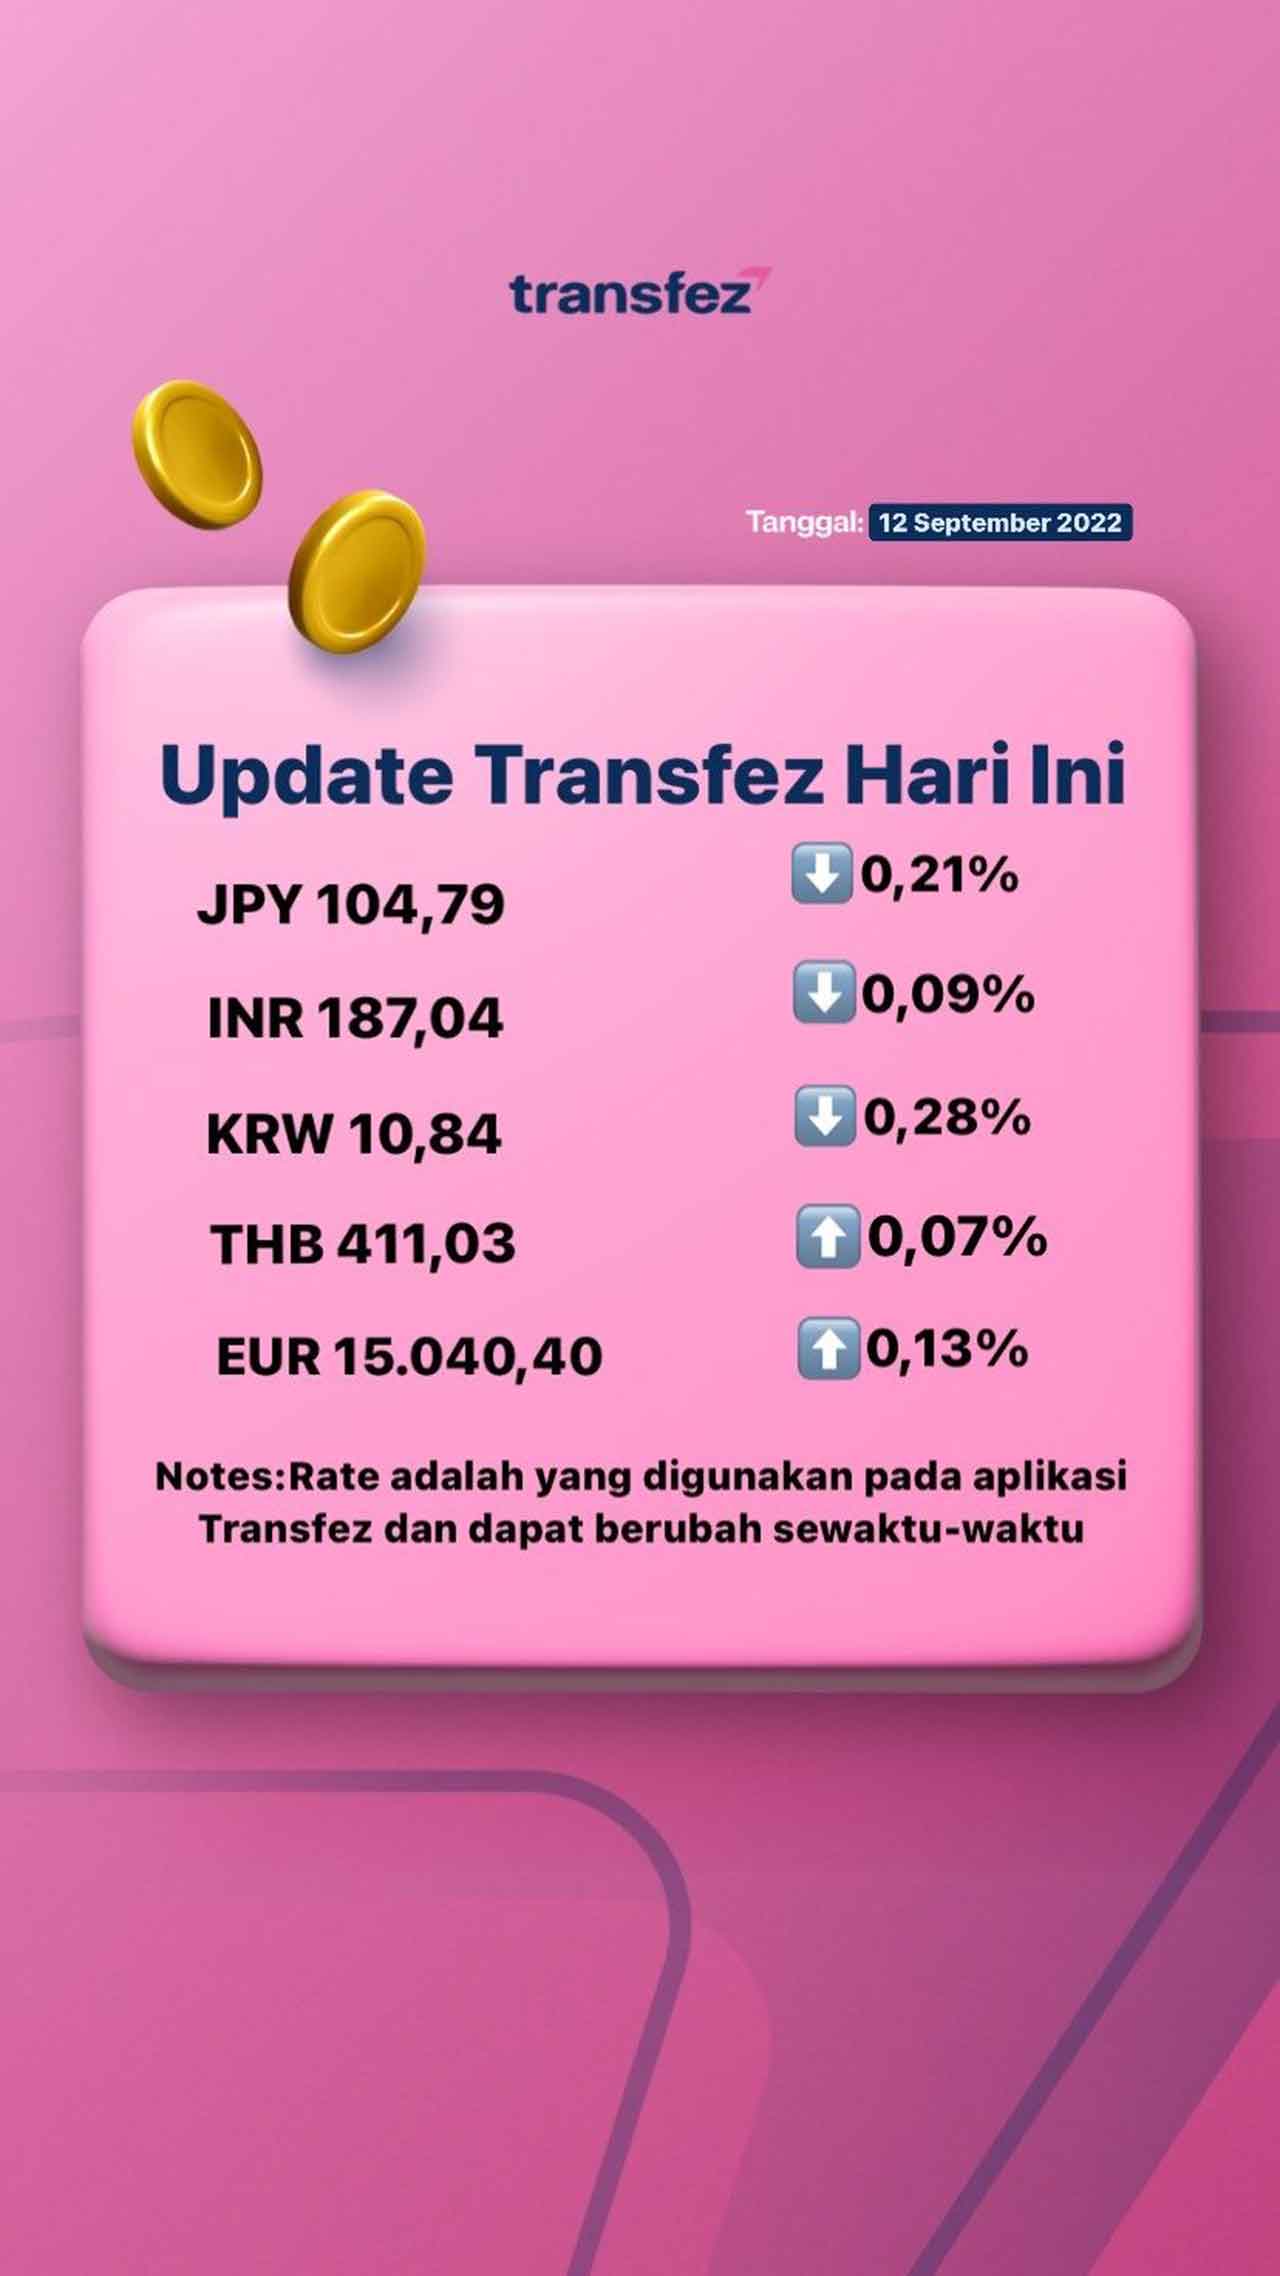 Update Rate Transfez Hari Ini 12 September 2022